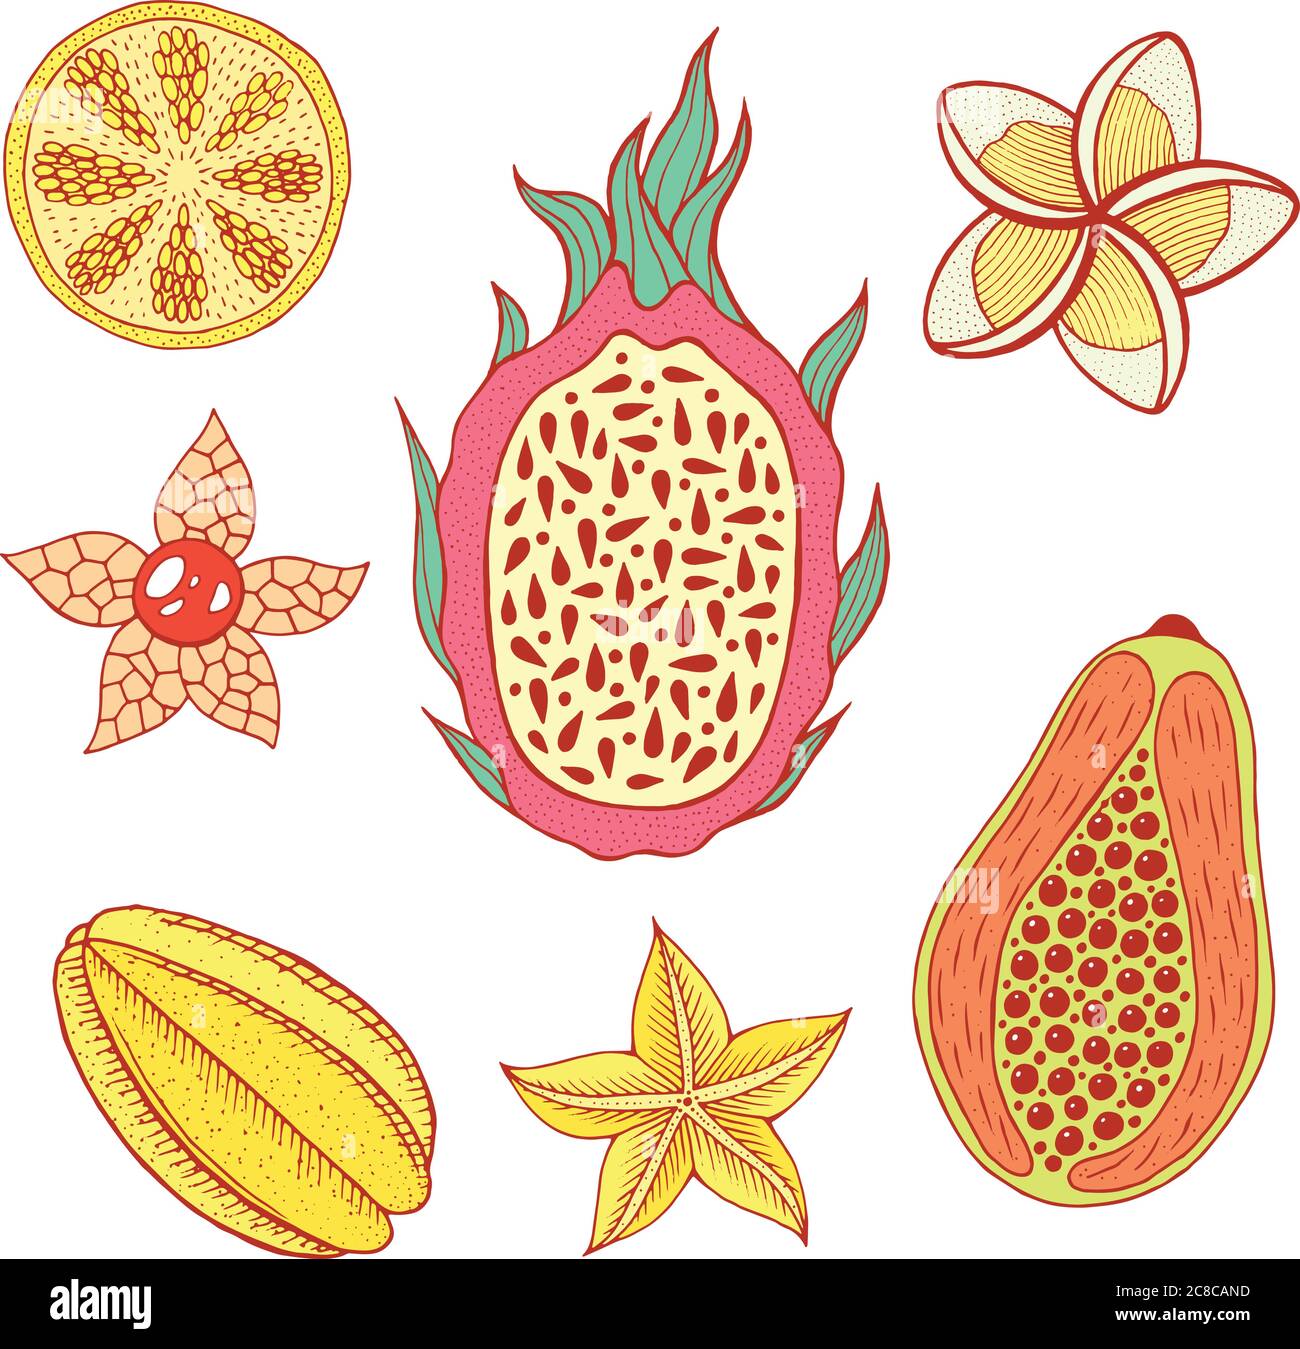 Tropische Frucht Stock Vektorgrafiken kaufen   Seite 20   Alamy Idées